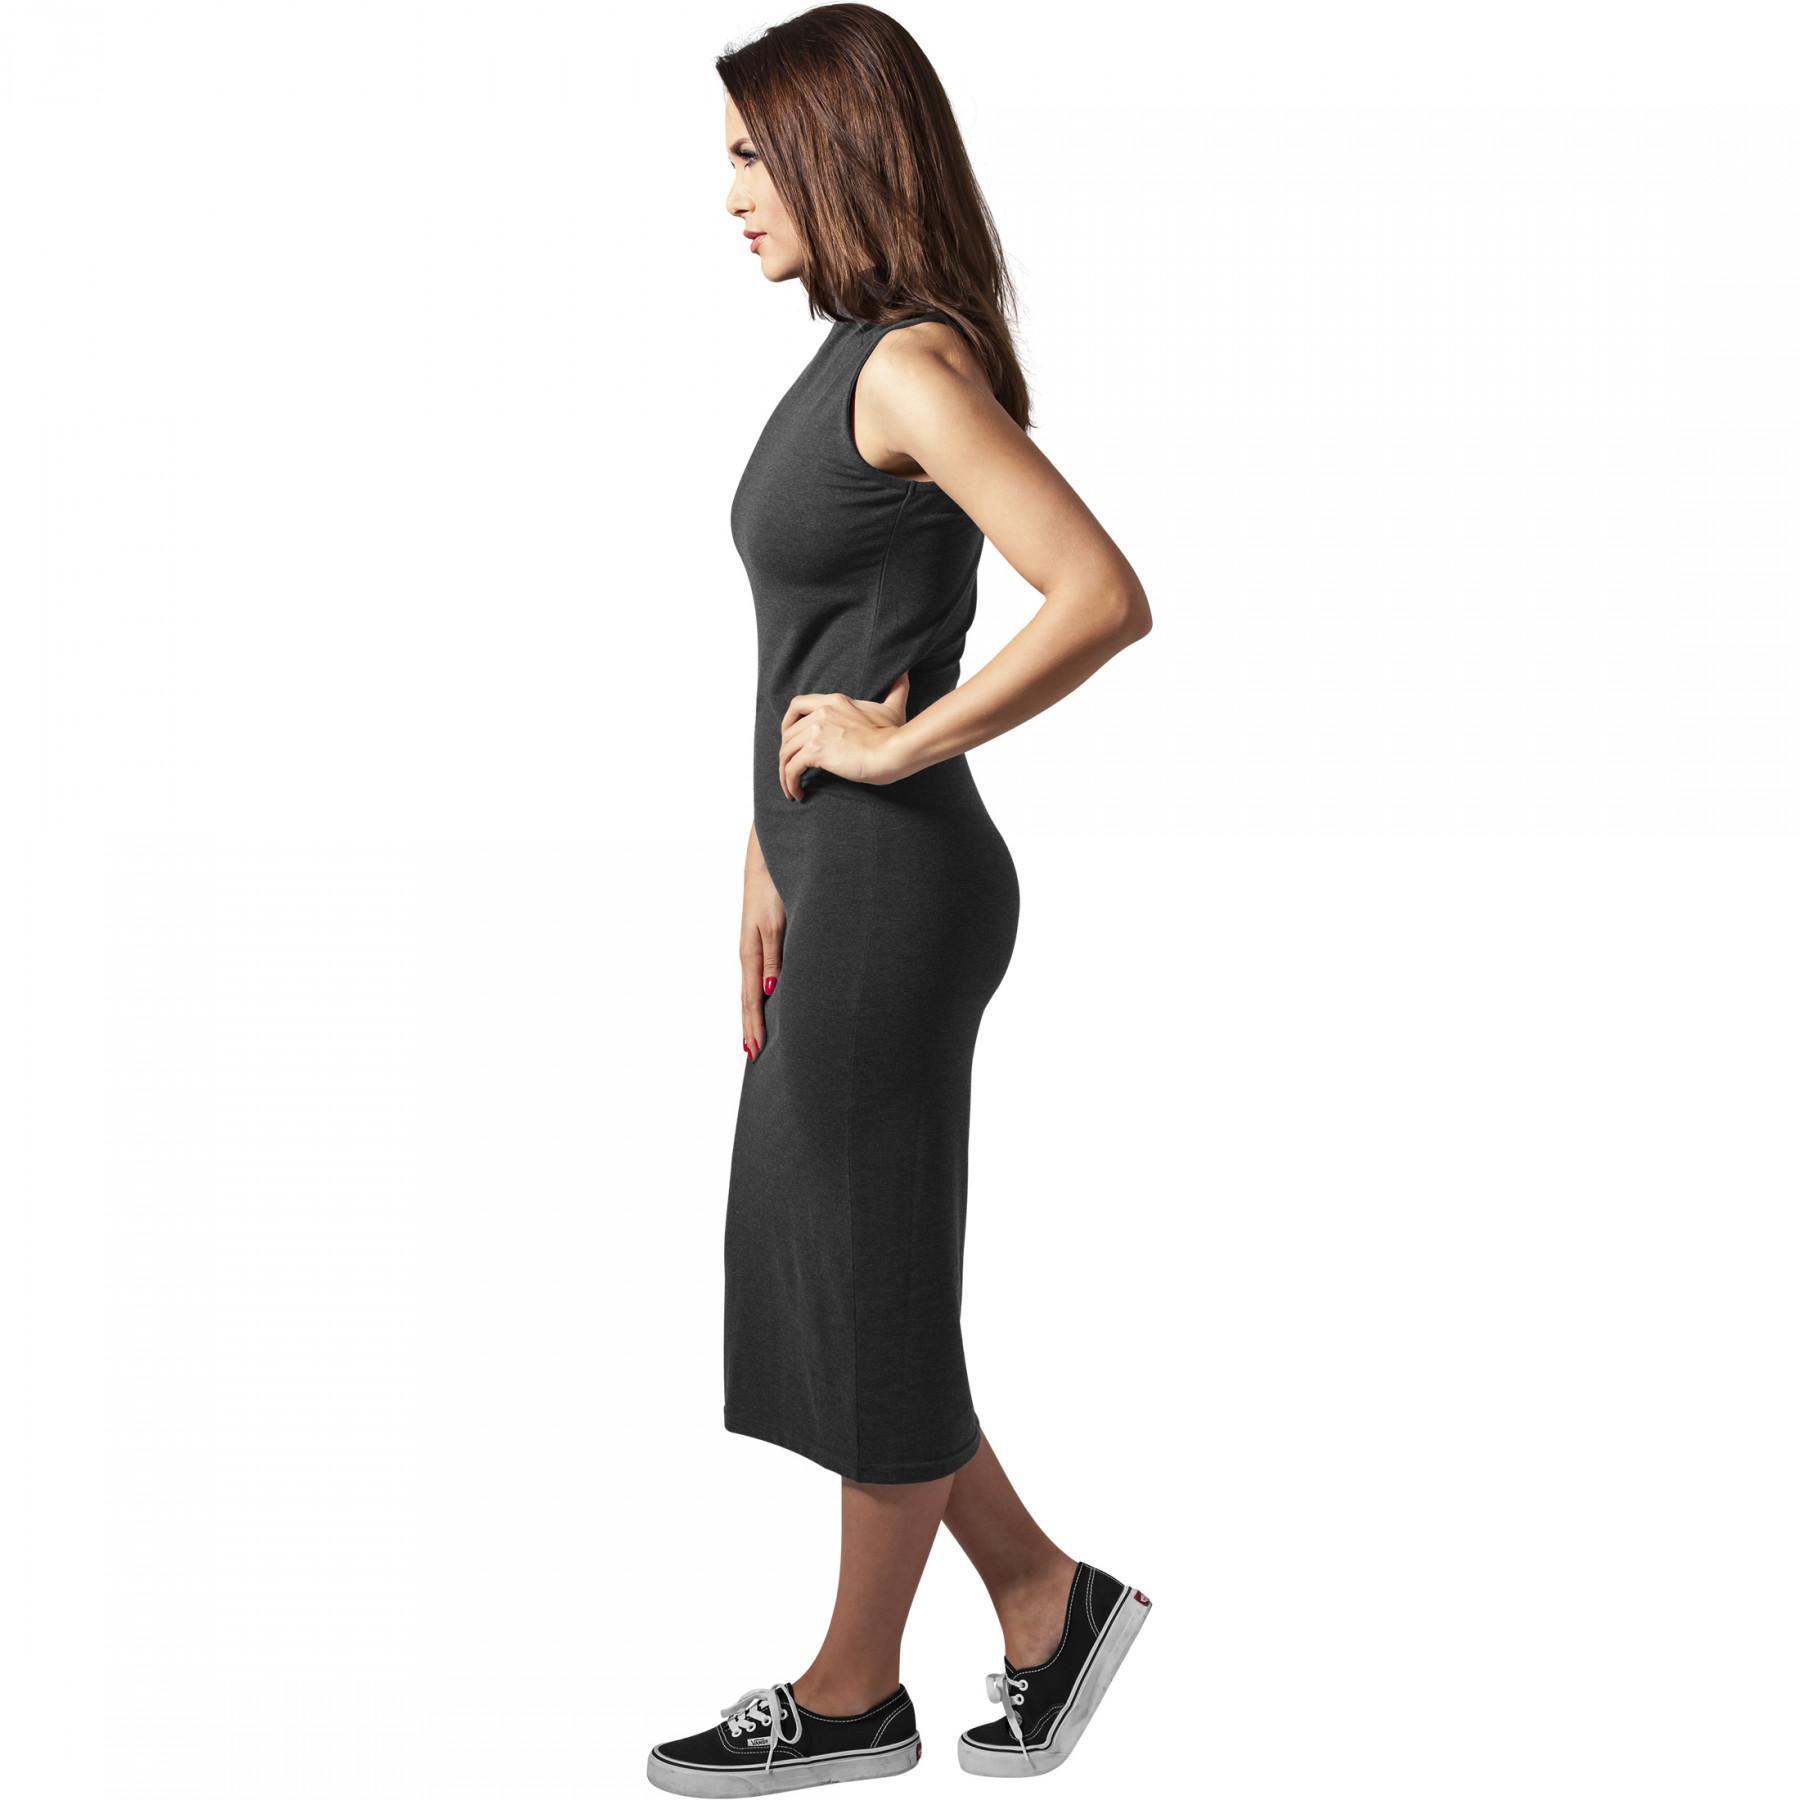 Women's Urban Classic stretch turtlene dress